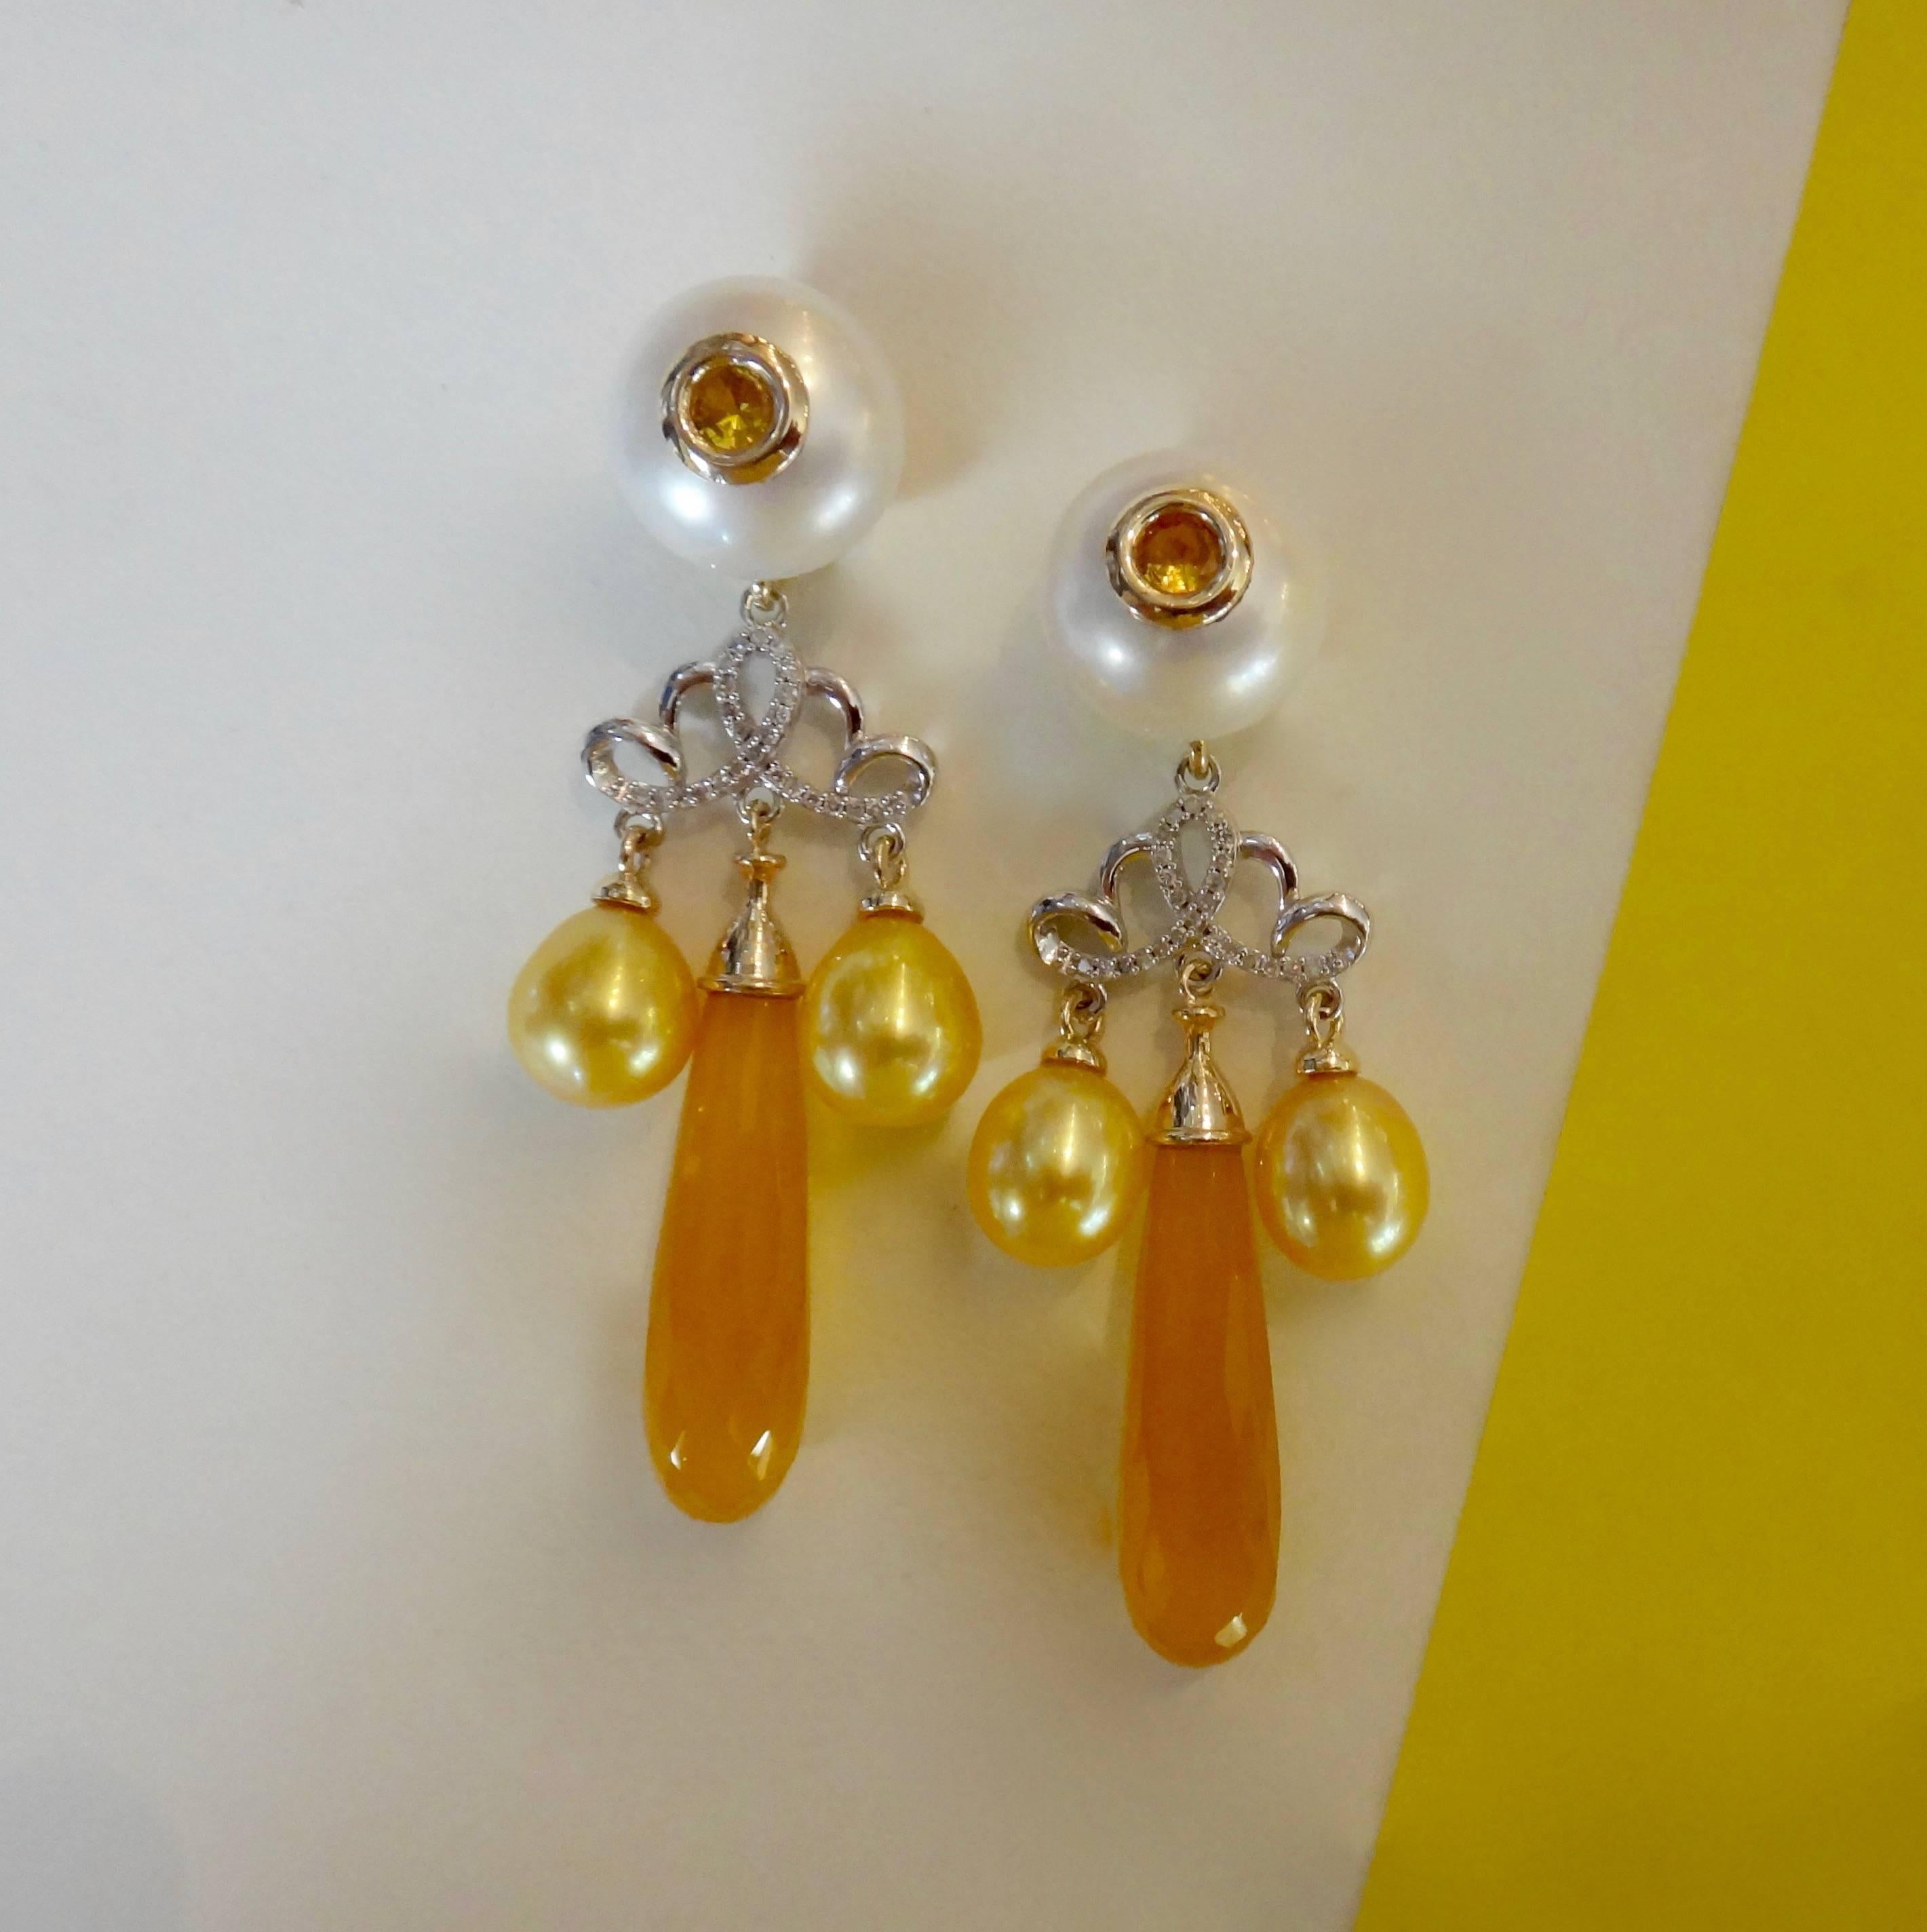 Des briolettes en calcédoine dorée d'une riche couleur jaune/orange sont suspendues à des perles de culture blanches percées et serties de saphirs jaunes.  Des perles en forme de goutte d'or décorent ces boucles d'oreilles pendantes en diamant